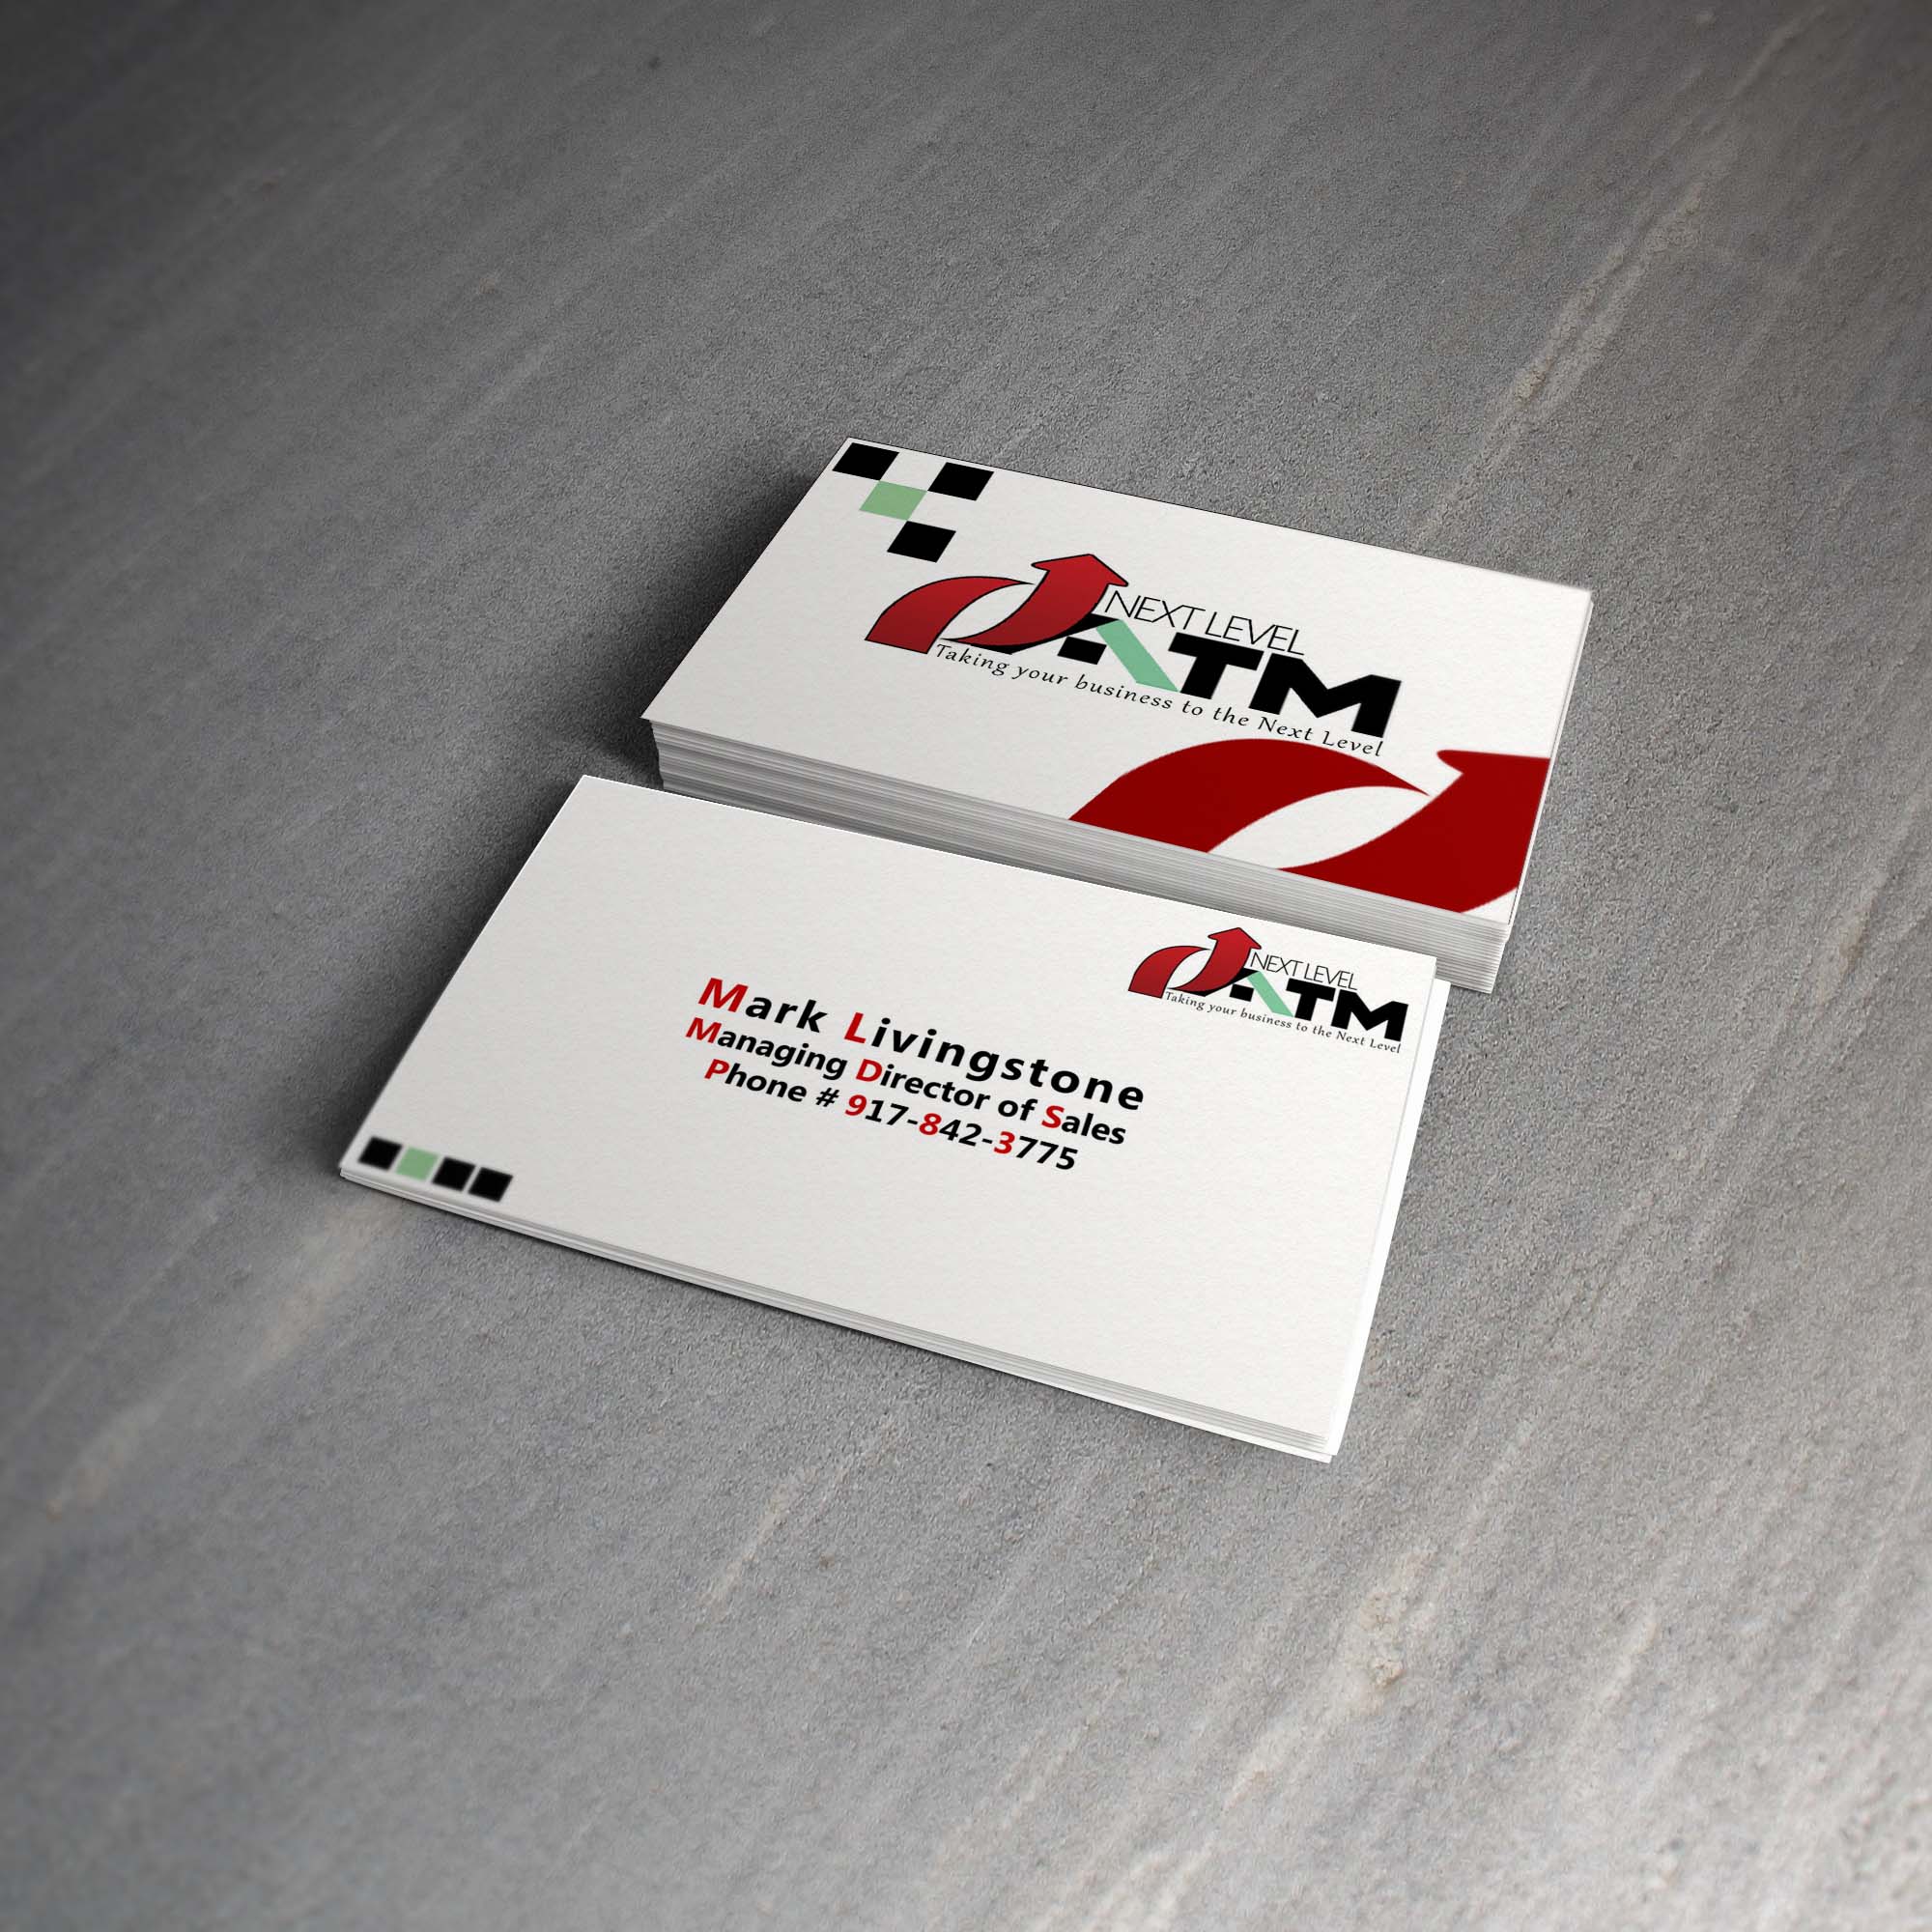 Next Level ATM Business Card design by Merog, merogdesign.com